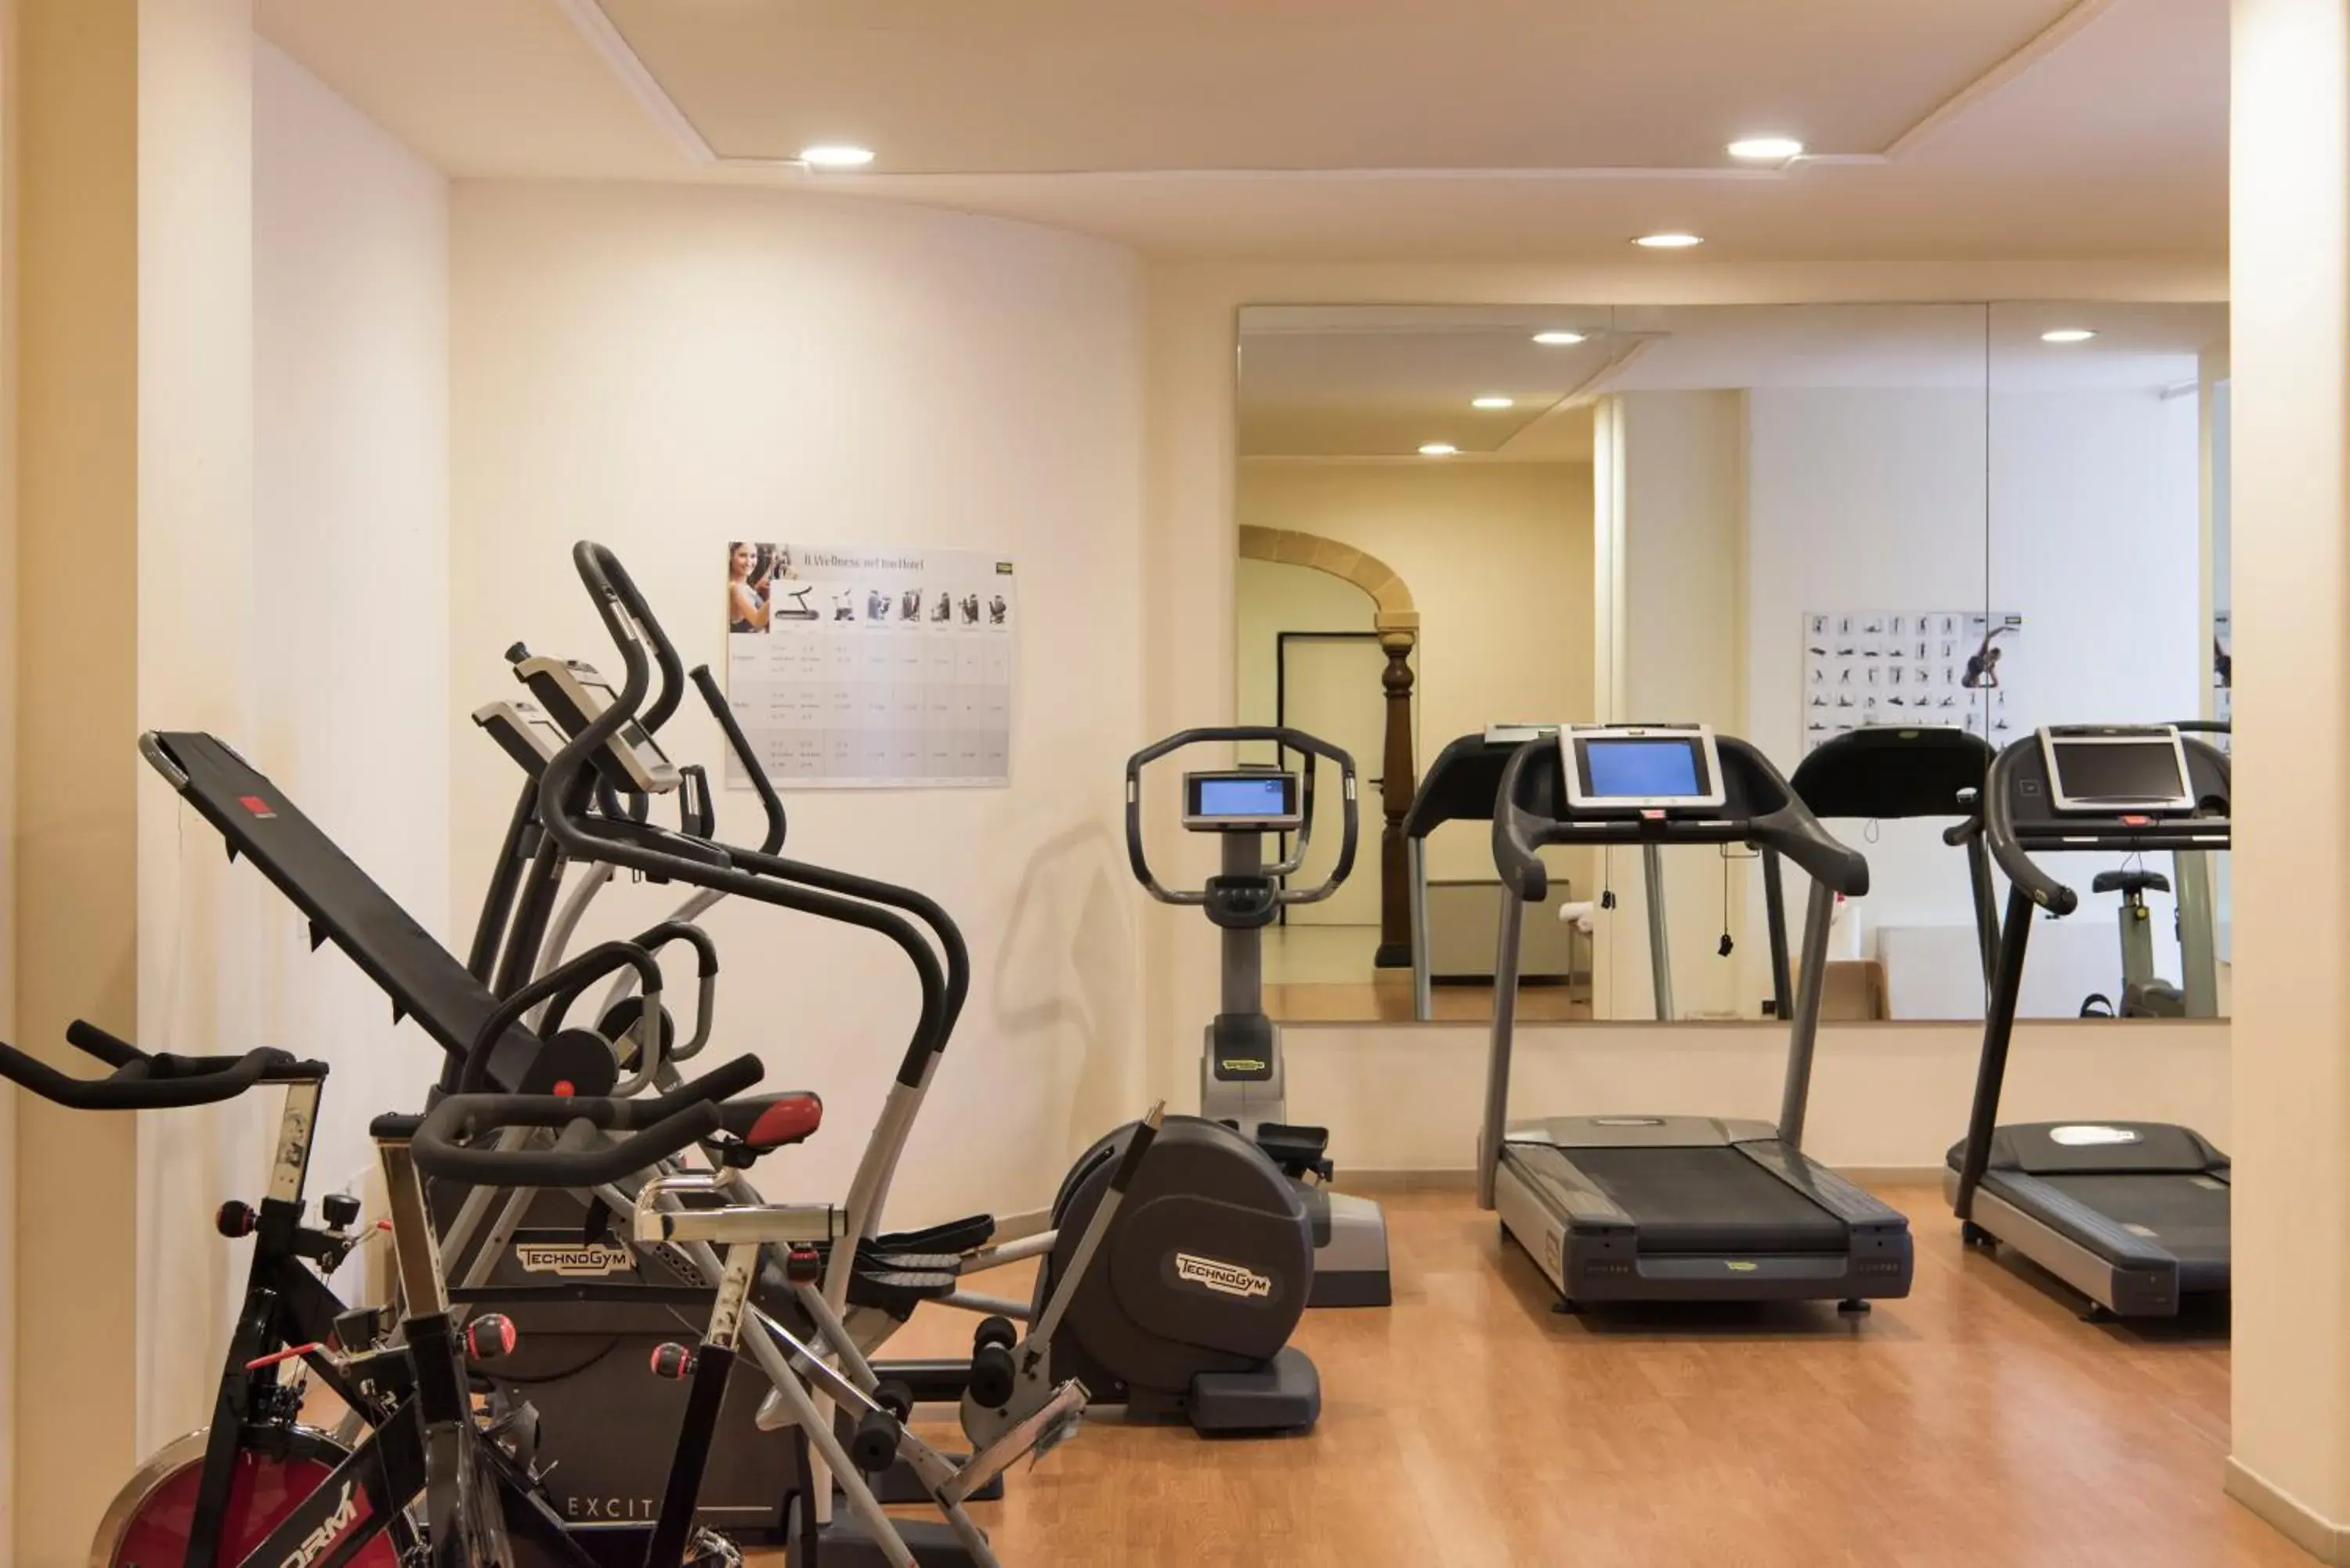 Fitness centre/facilities, Fitness Center/Facilities in Hotel Il Melograno